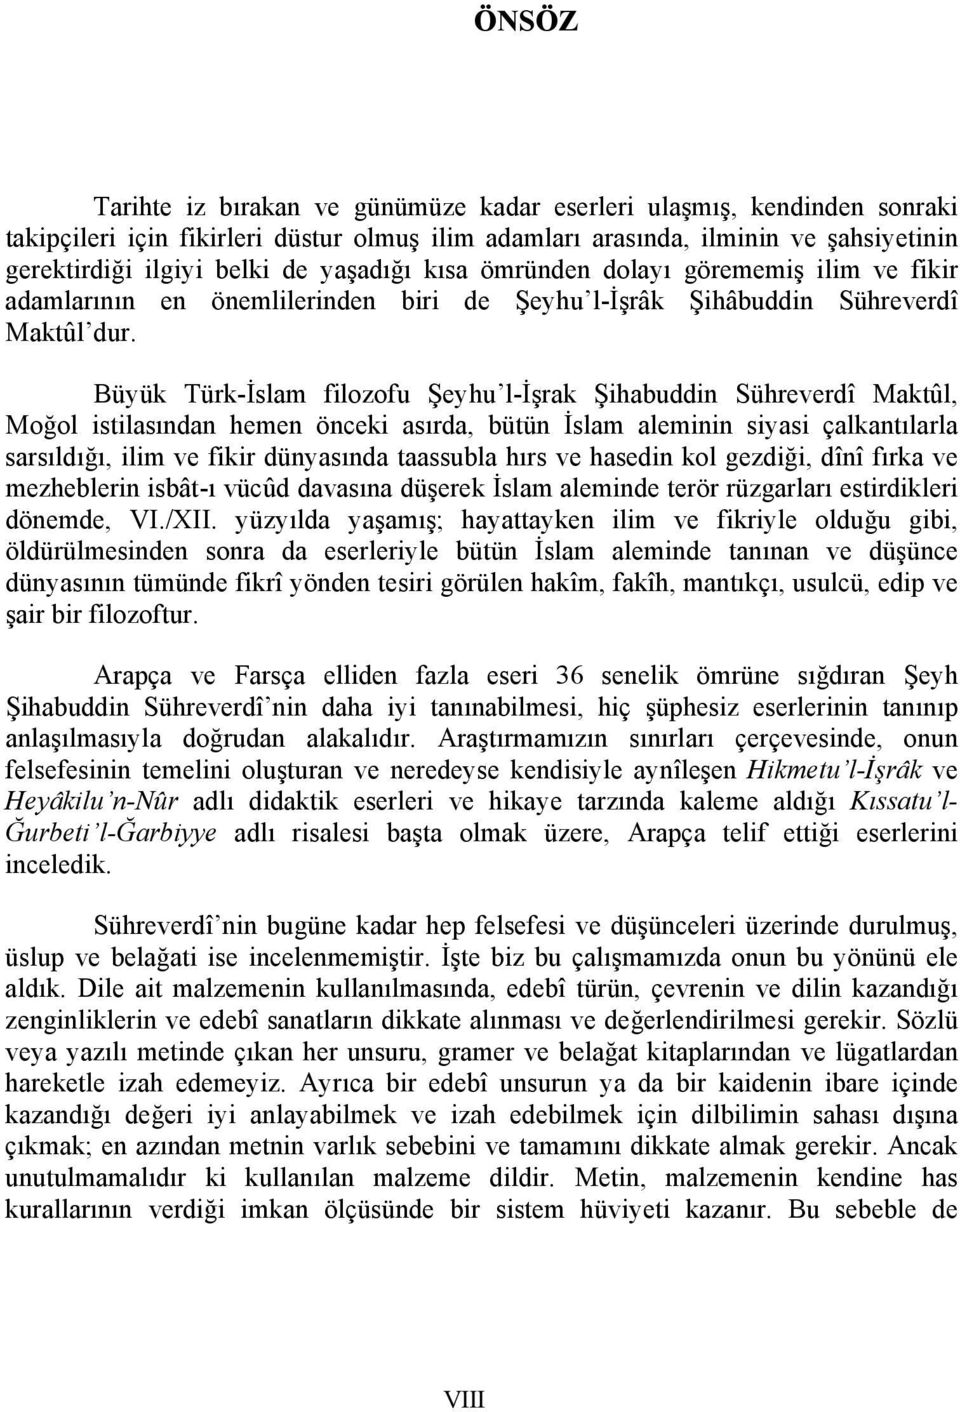 Büyük Türk-İslam filozofu Şeyhu l-işrak Şihabuddin Sühreverdî Maktûl, Moğol istilasından hemen önceki asırda, bütün İslam aleminin siyasi çalkantılarla sarsıldığı, ilim ve fikir dünyasında taassubla